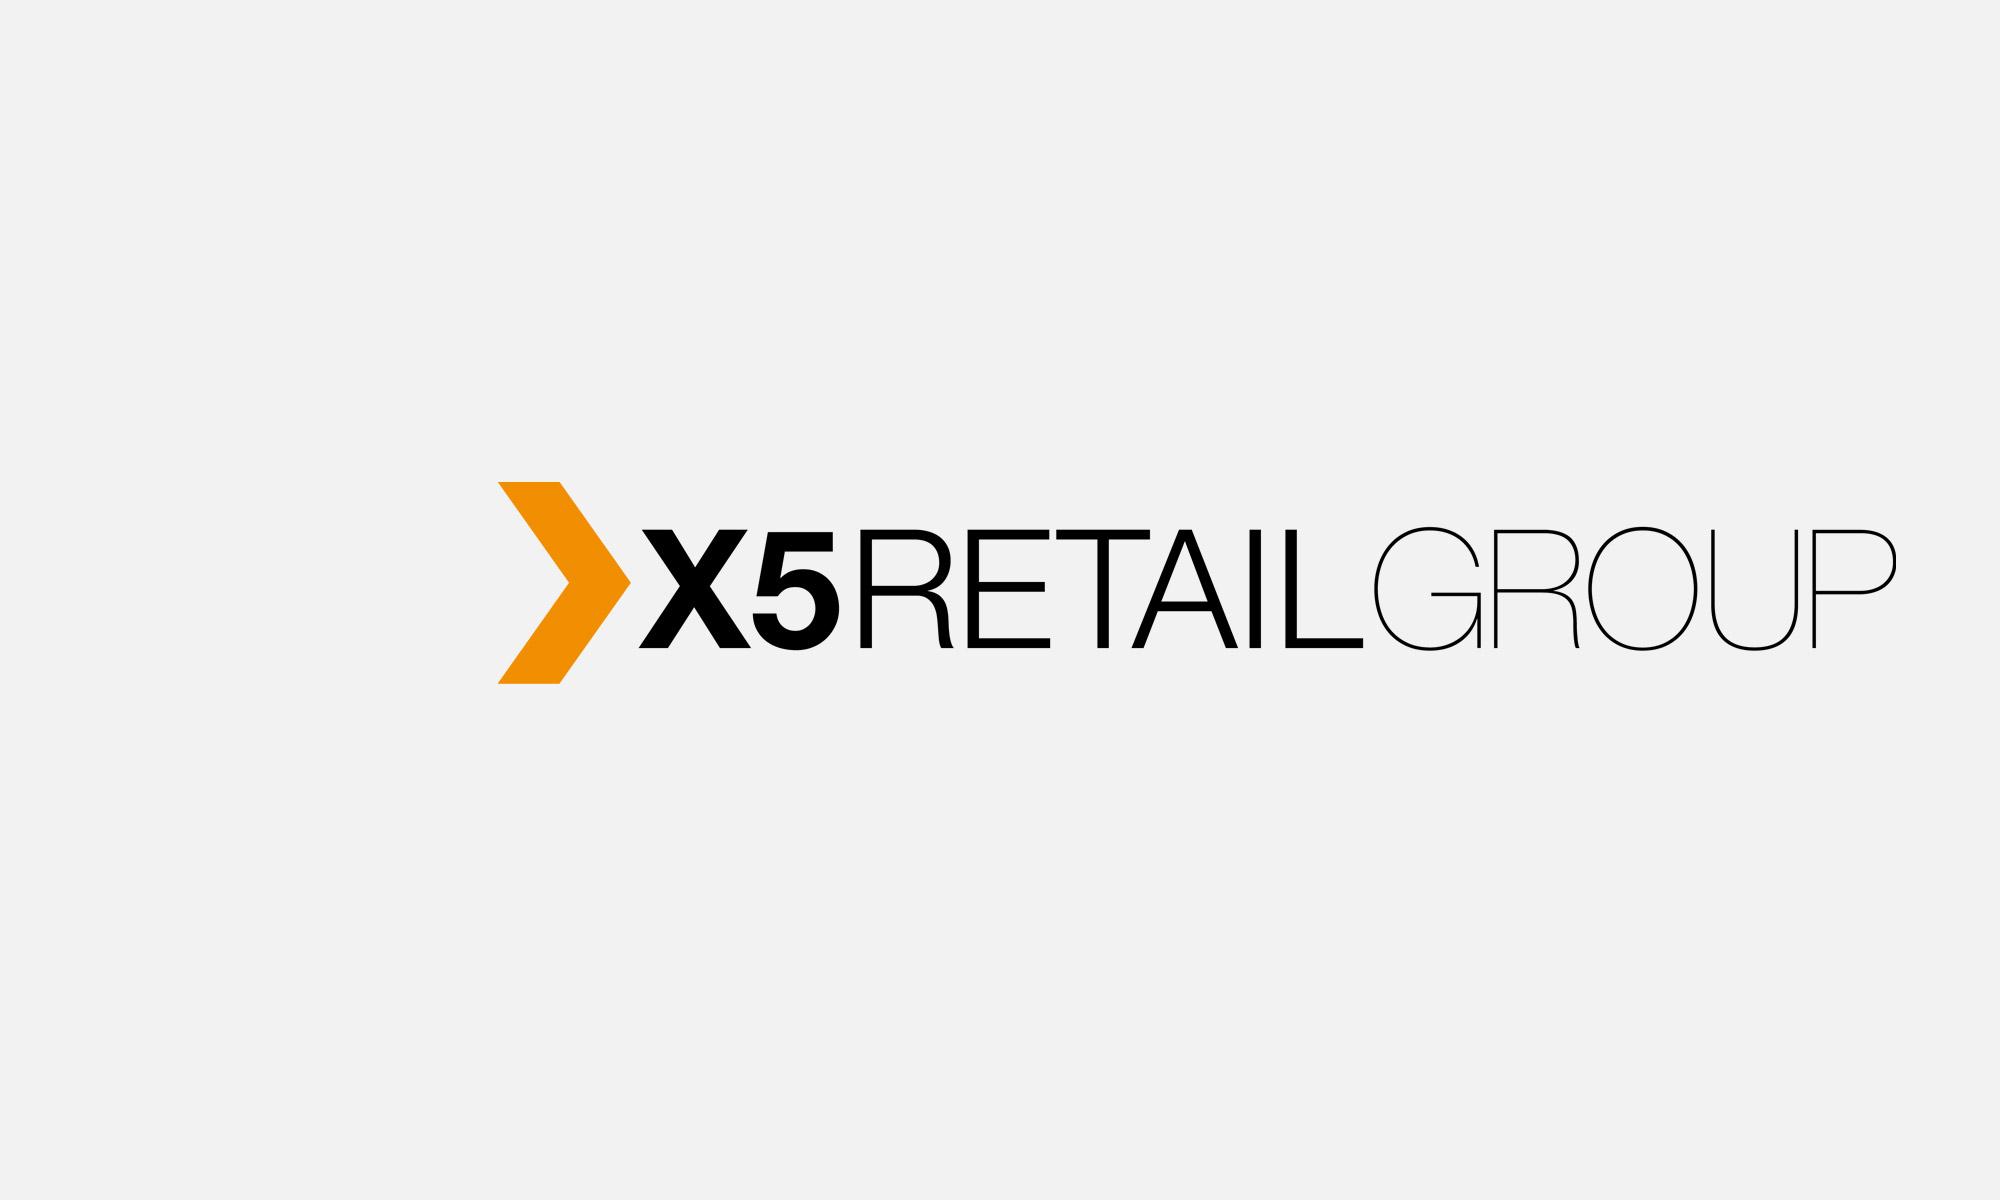 X5 transport. Х5 Retail Group logo. Группа x5 Retail Group. Х5 Ритейл групп логотип. X5 Retail Group PNG.